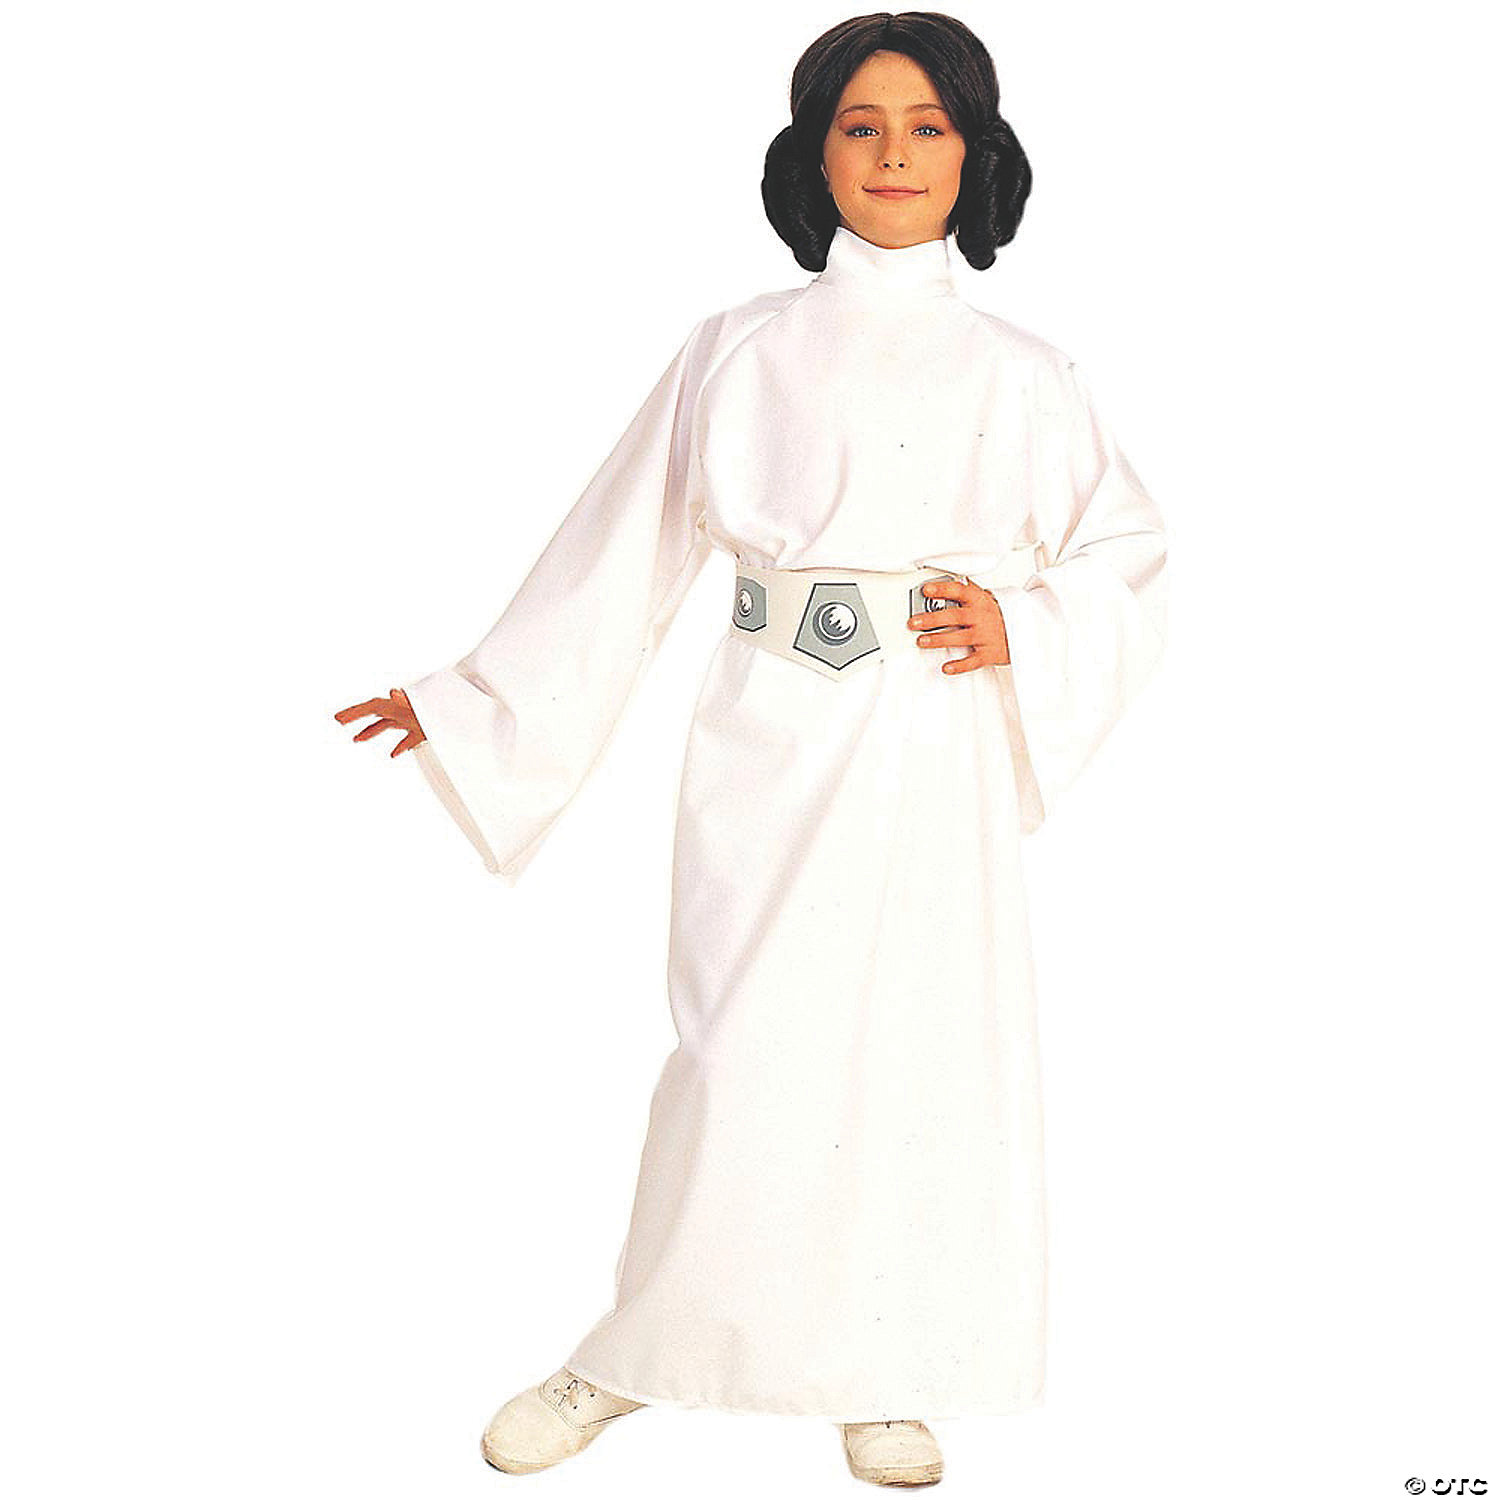 Sloppenwijk huichelarij een vuurtje stoken Girl's Deluxe Star Wars™ Princess Leia Costume - Large | Oriental Trading